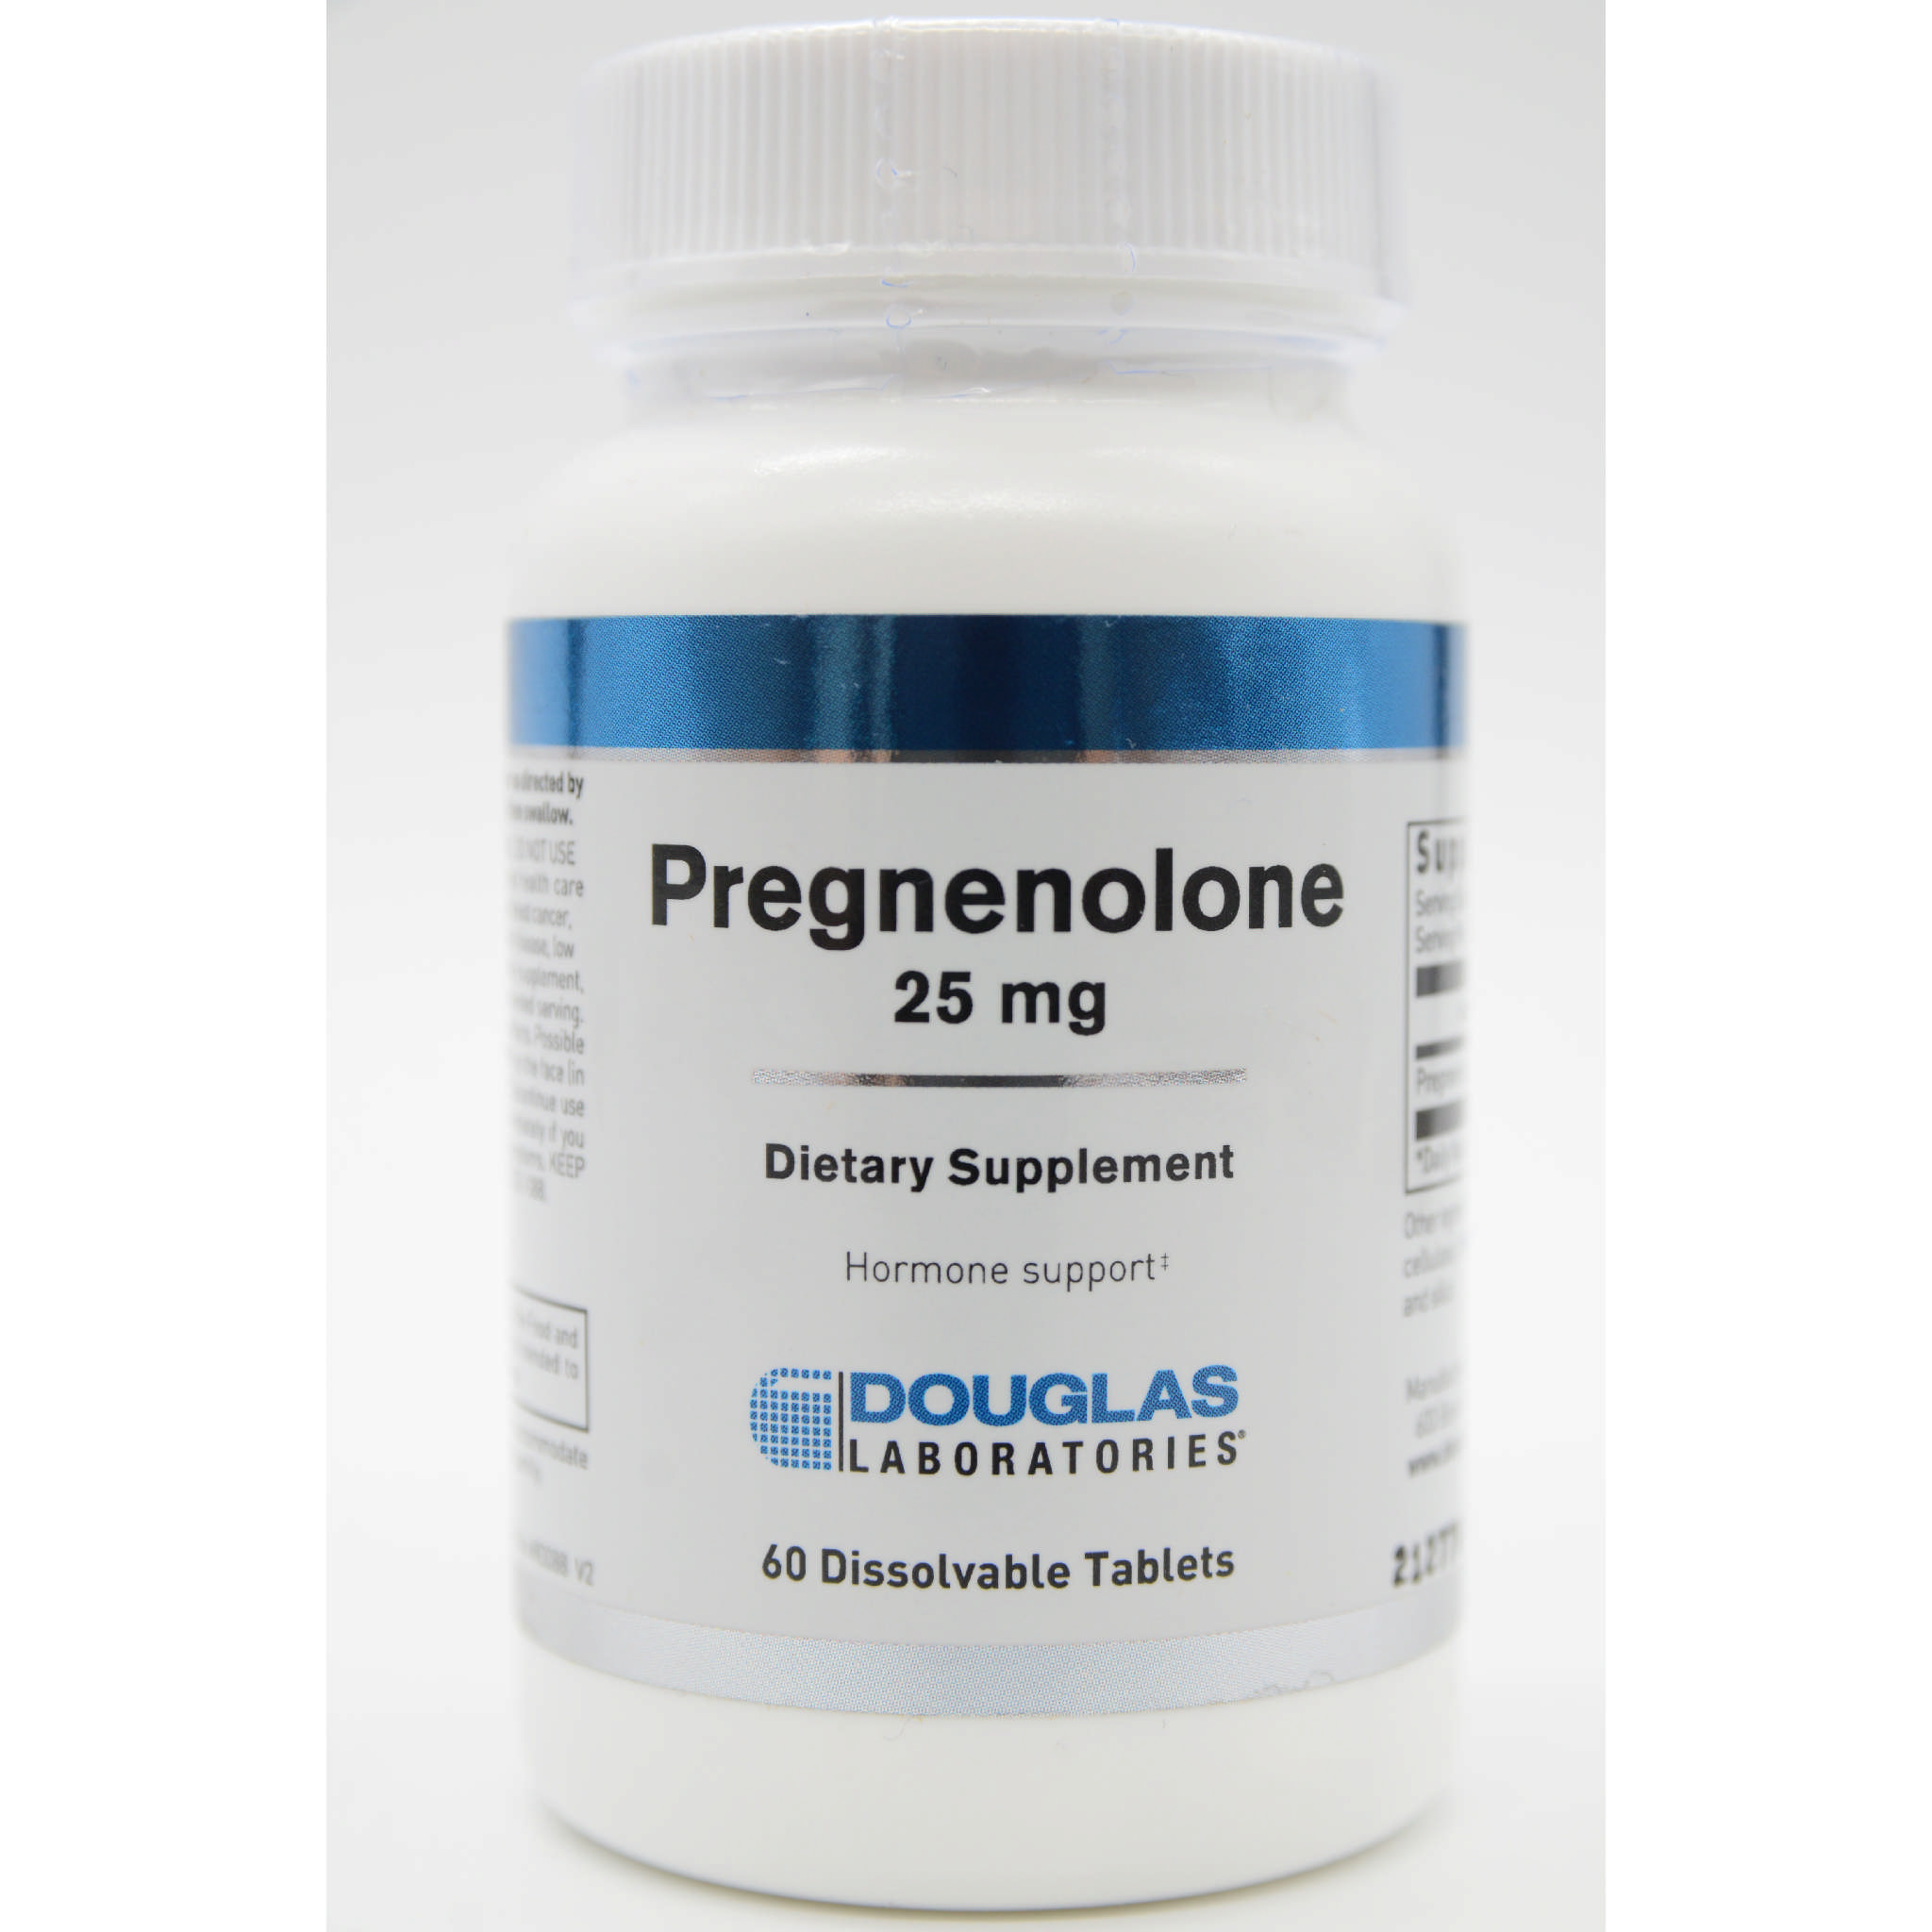 Douglas Laboratories - Pregnenolone 25 mg